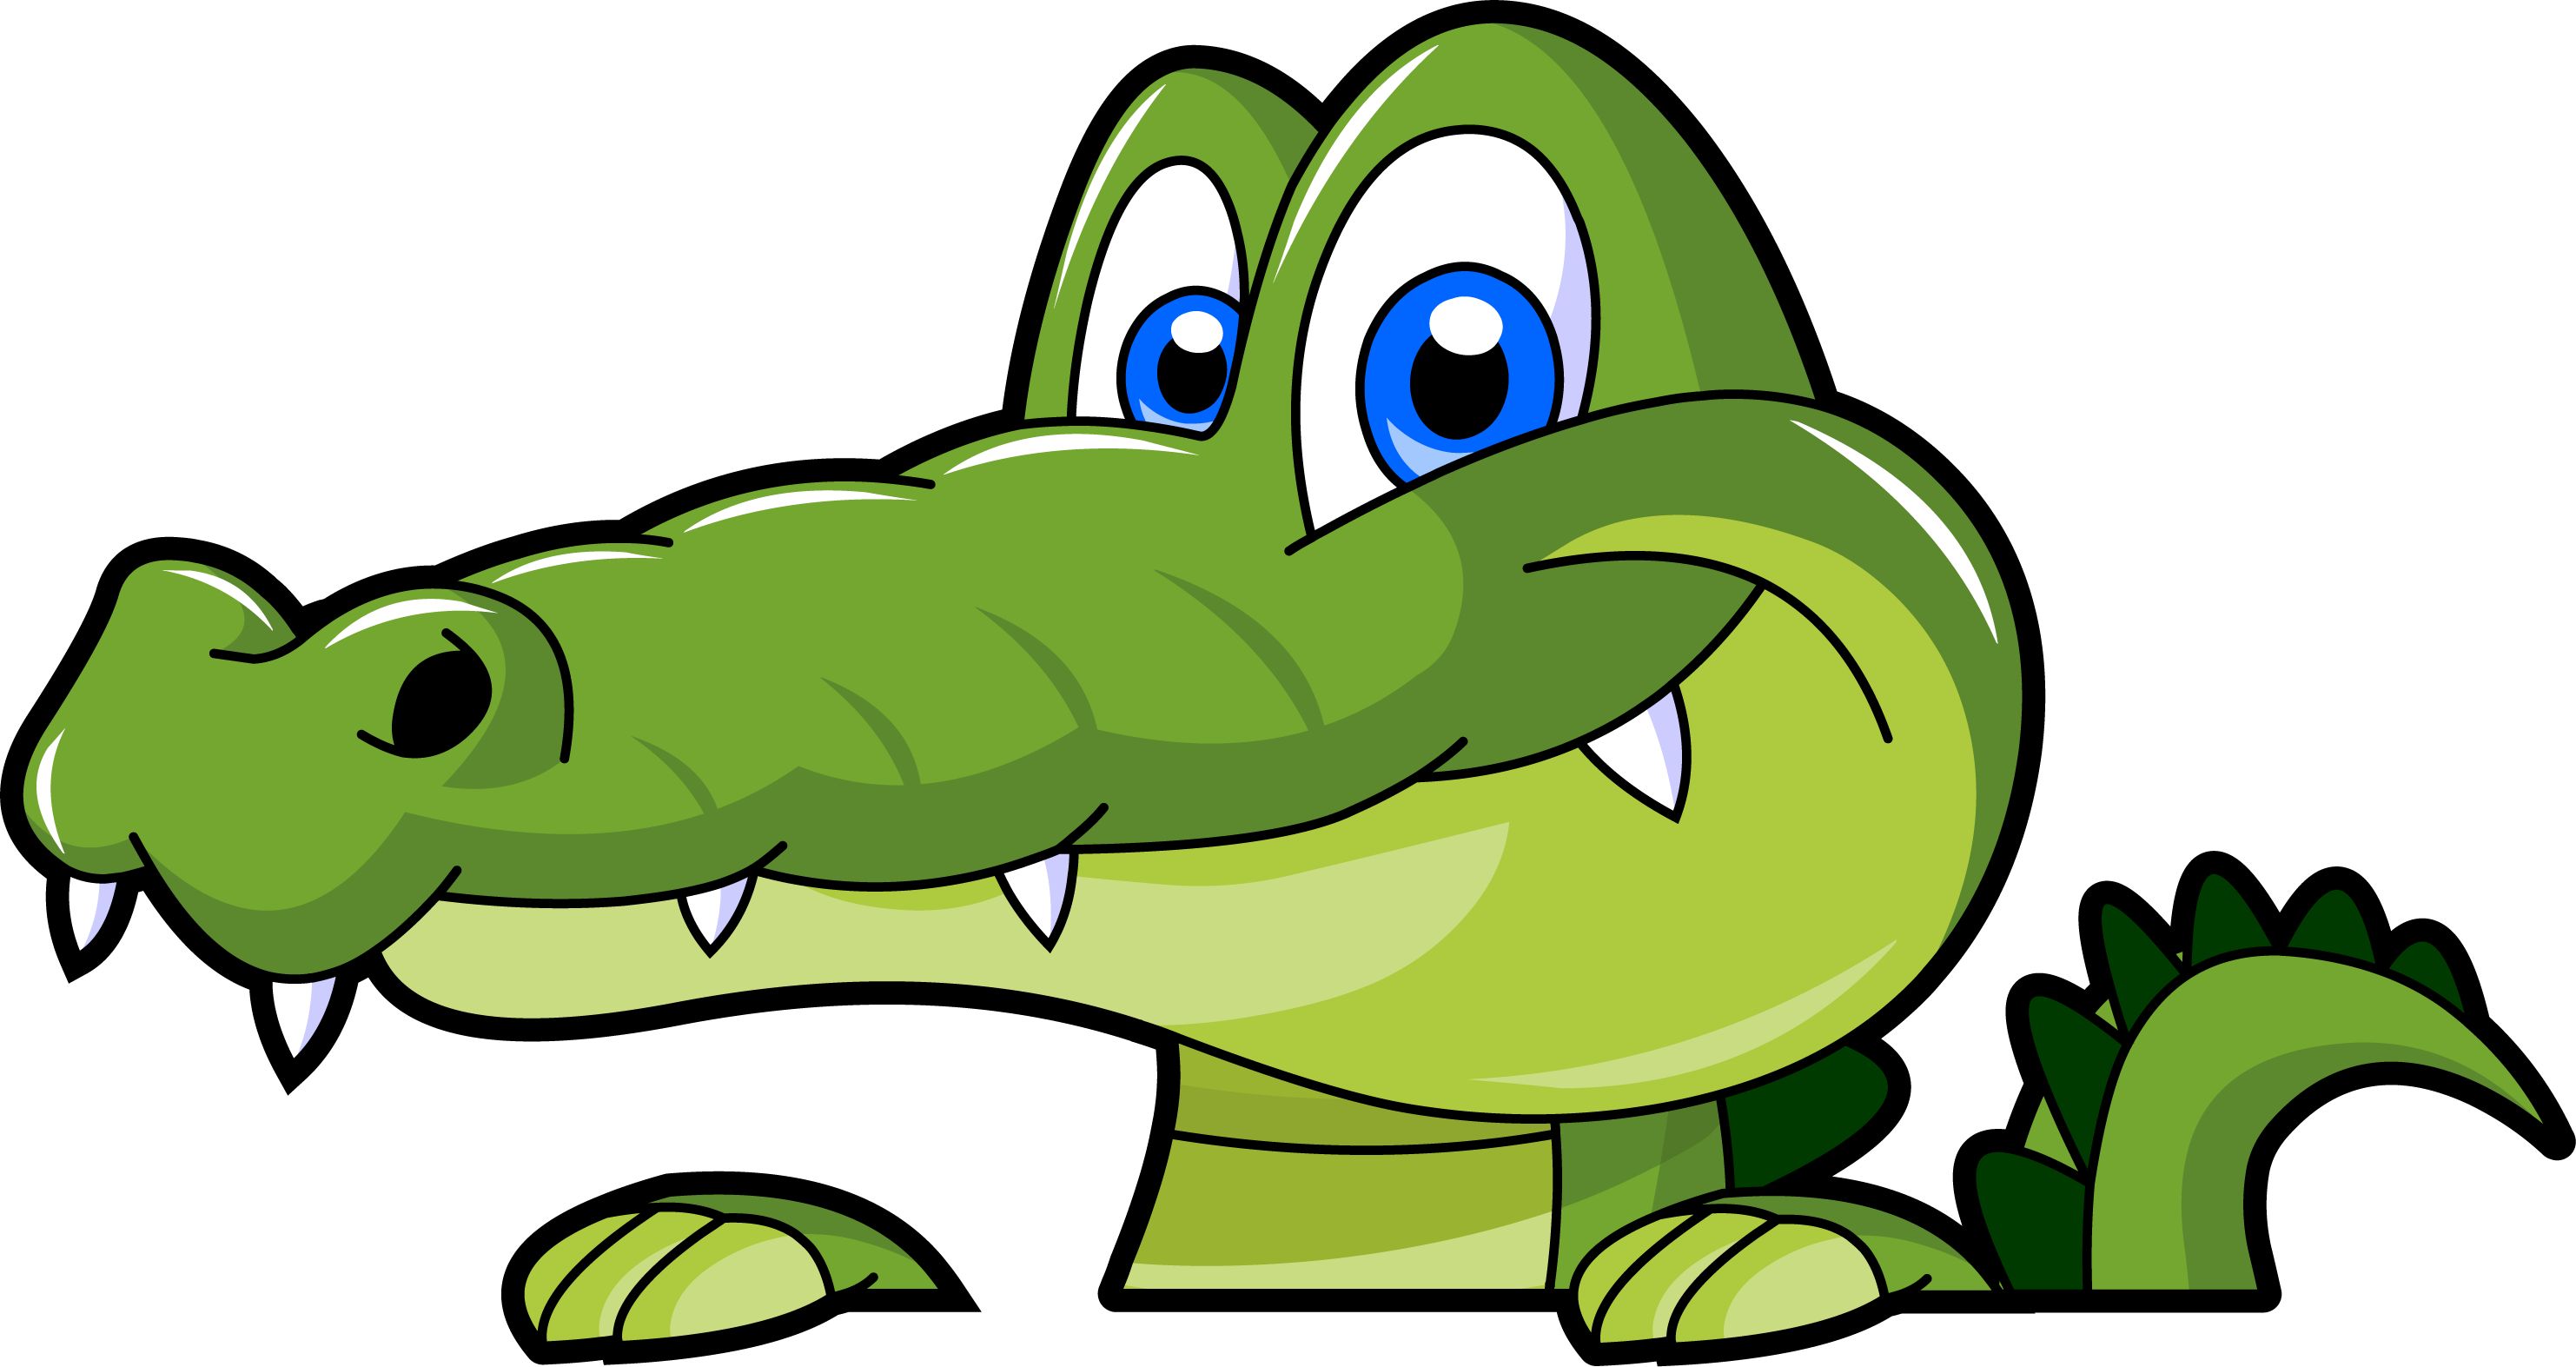 Funny alligator clip art crocodile pictures